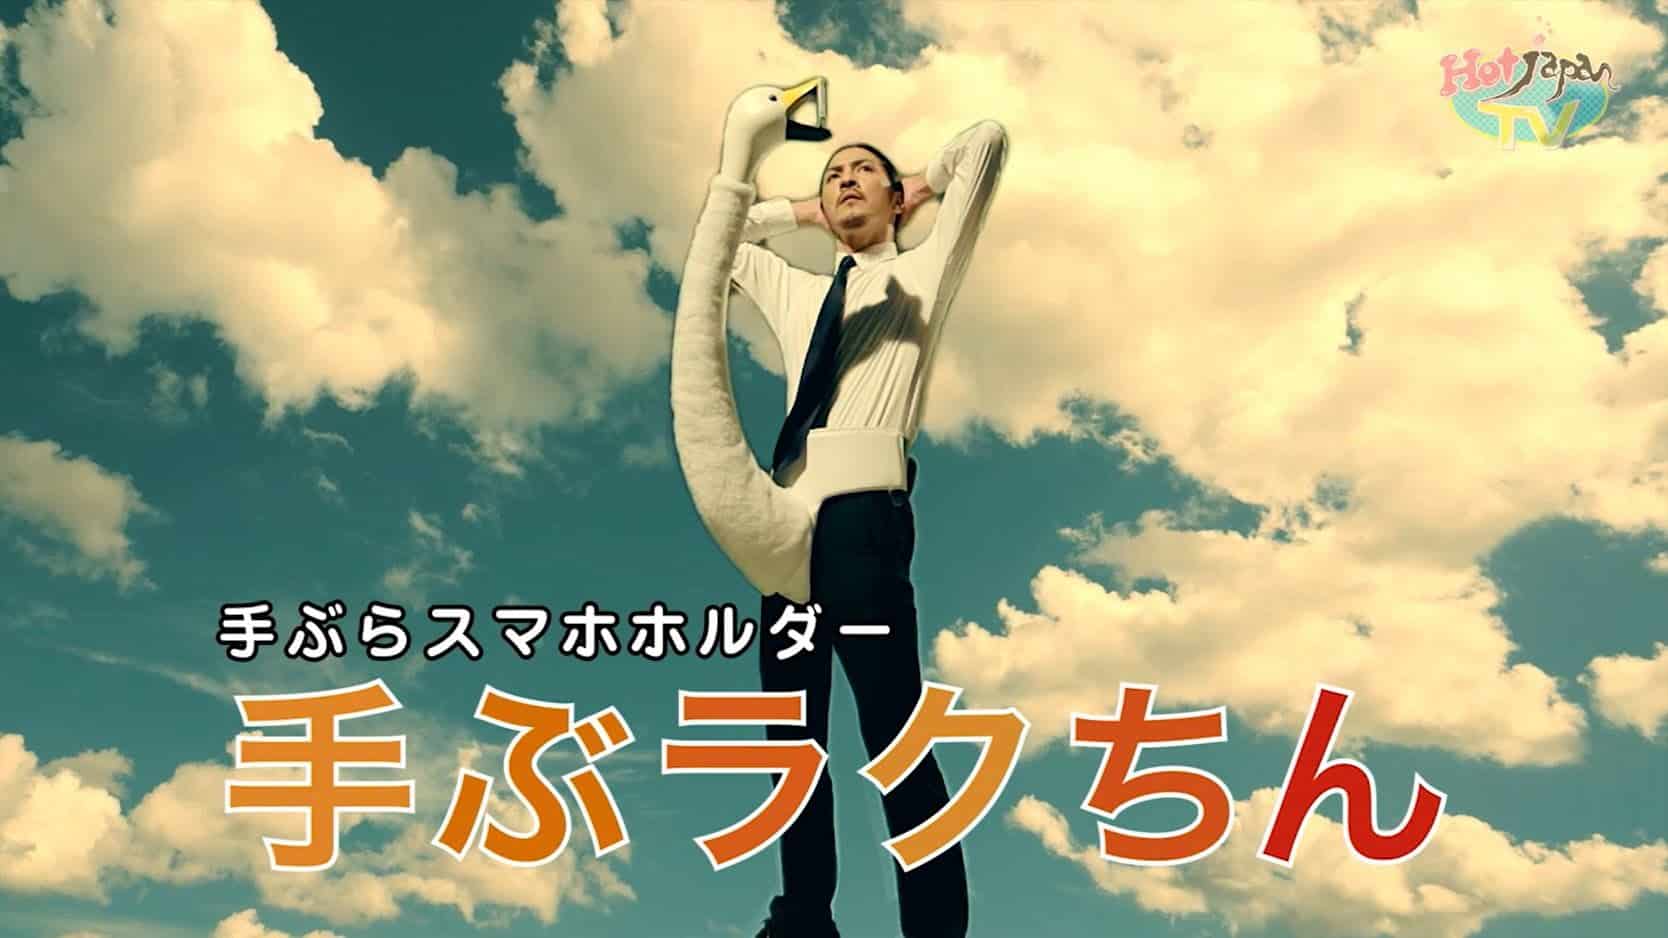 Japansk mobiltelefon svanehalsholder fra fluen